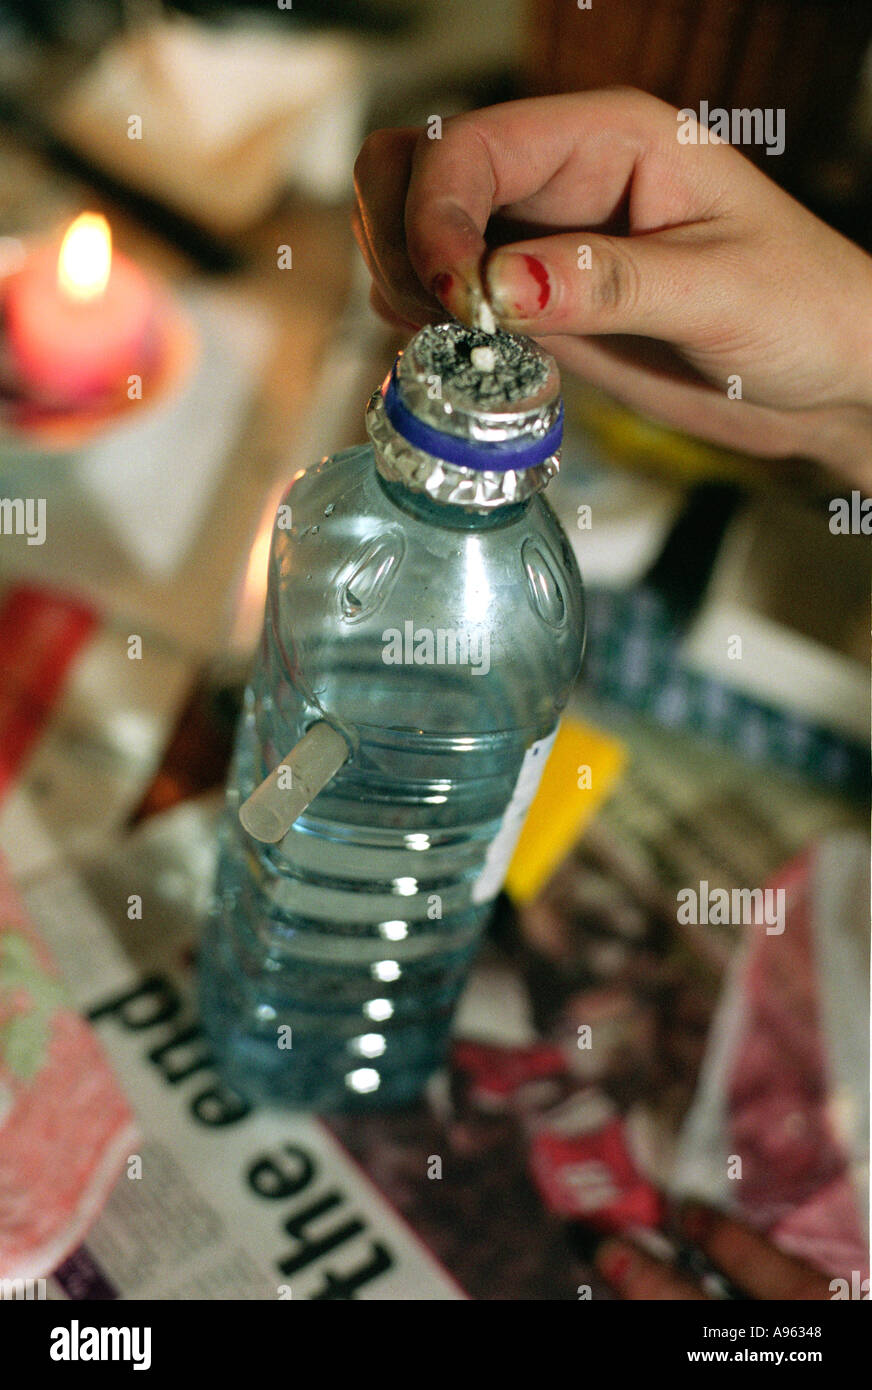 Süchtigen zu Rauchen von Crack-Kokain aus einer speziell vorbereiteten  Flasche vorbereiten Stockfotografie - Alamy